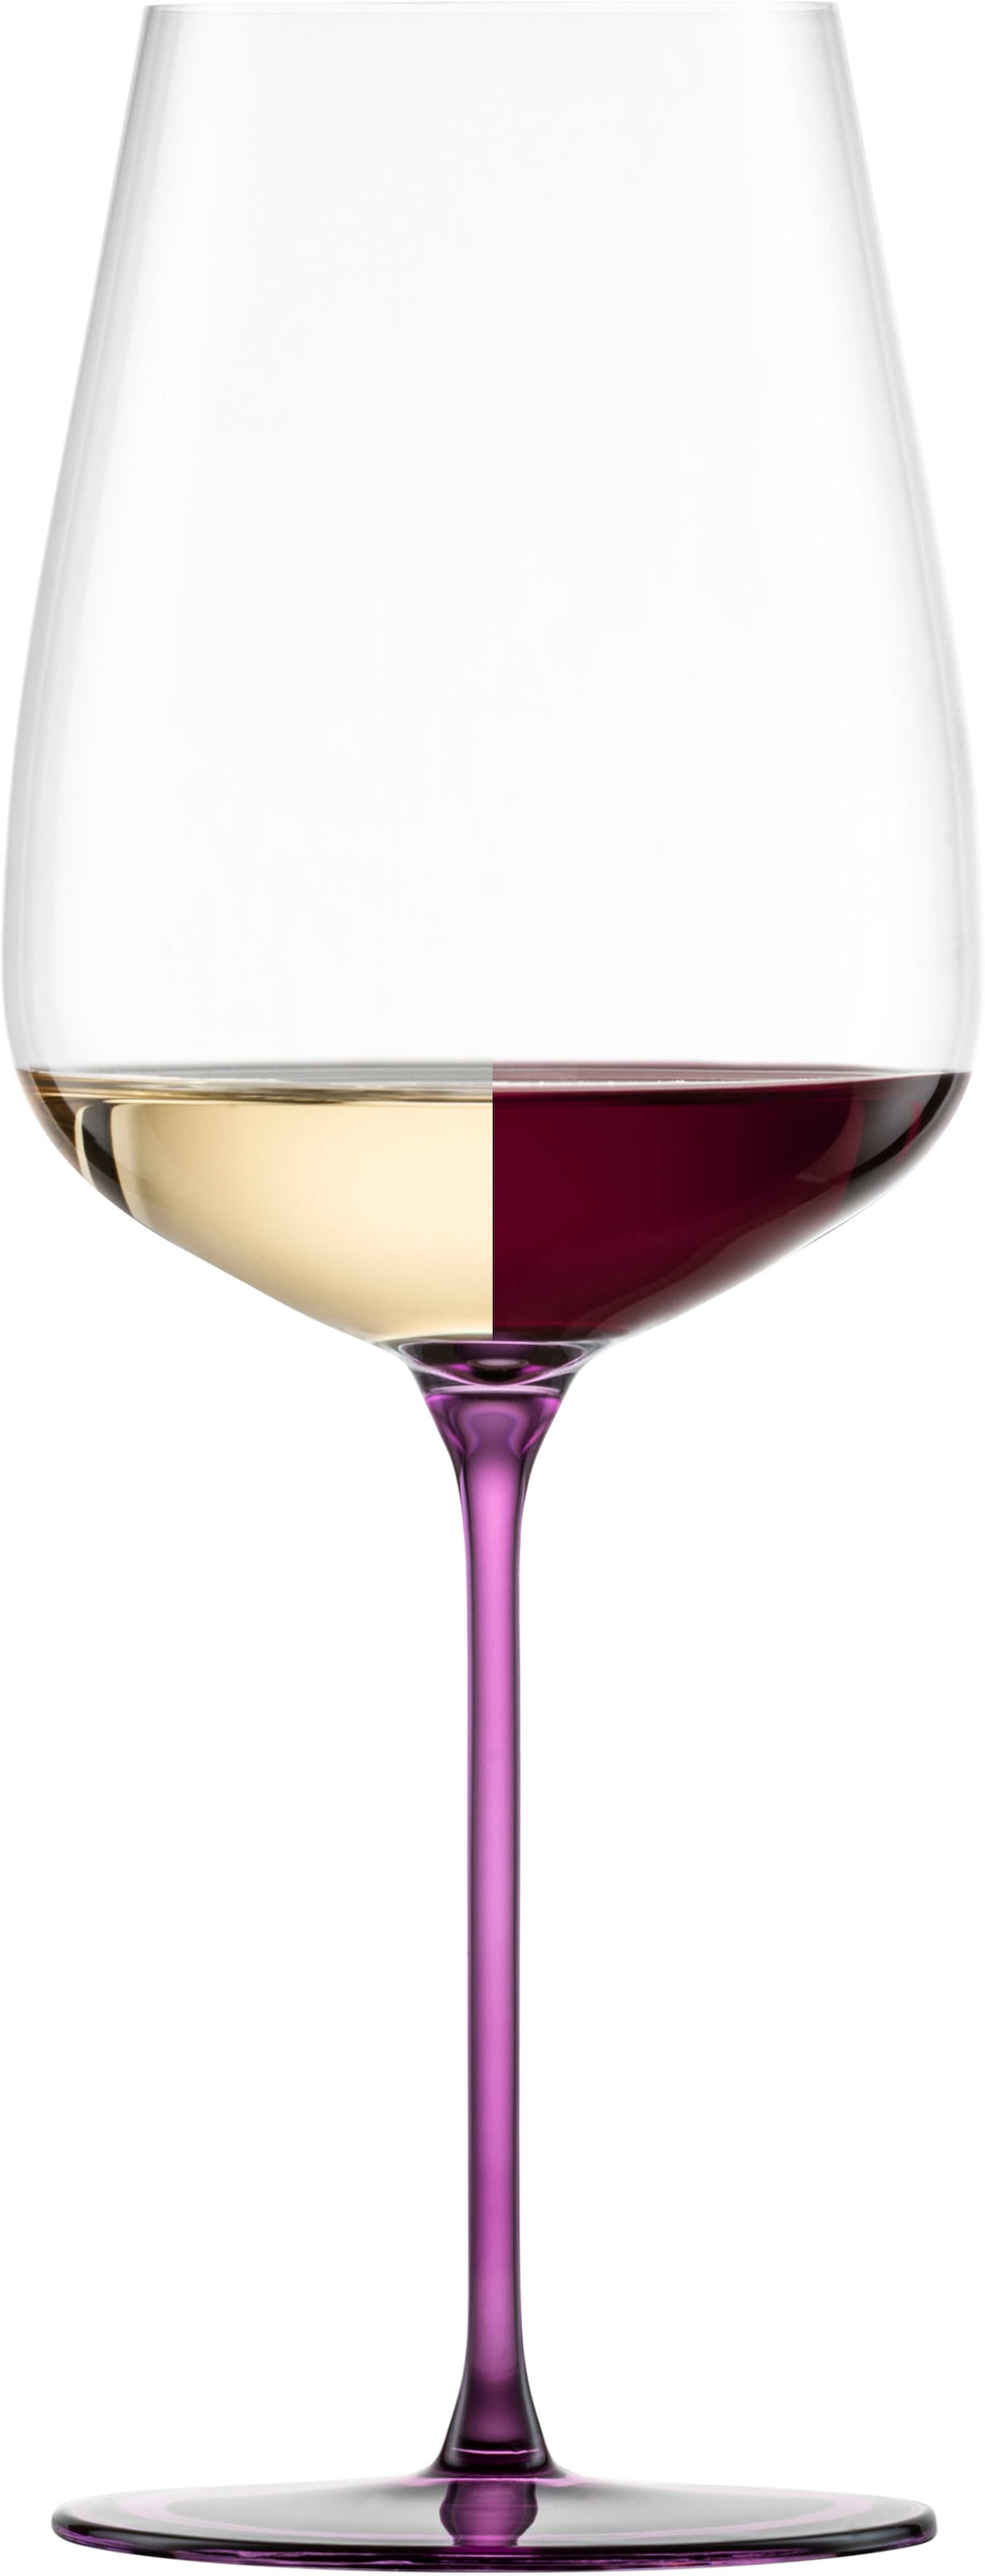 Eisch Weinglas »INSPIRE SENSISPLUS, Made in Germany«, (Set, 2 tlg., 2 Gläser im Geschenkkarton), Veredelung der farbigen Stiele in Handarbeit, 2-teilig